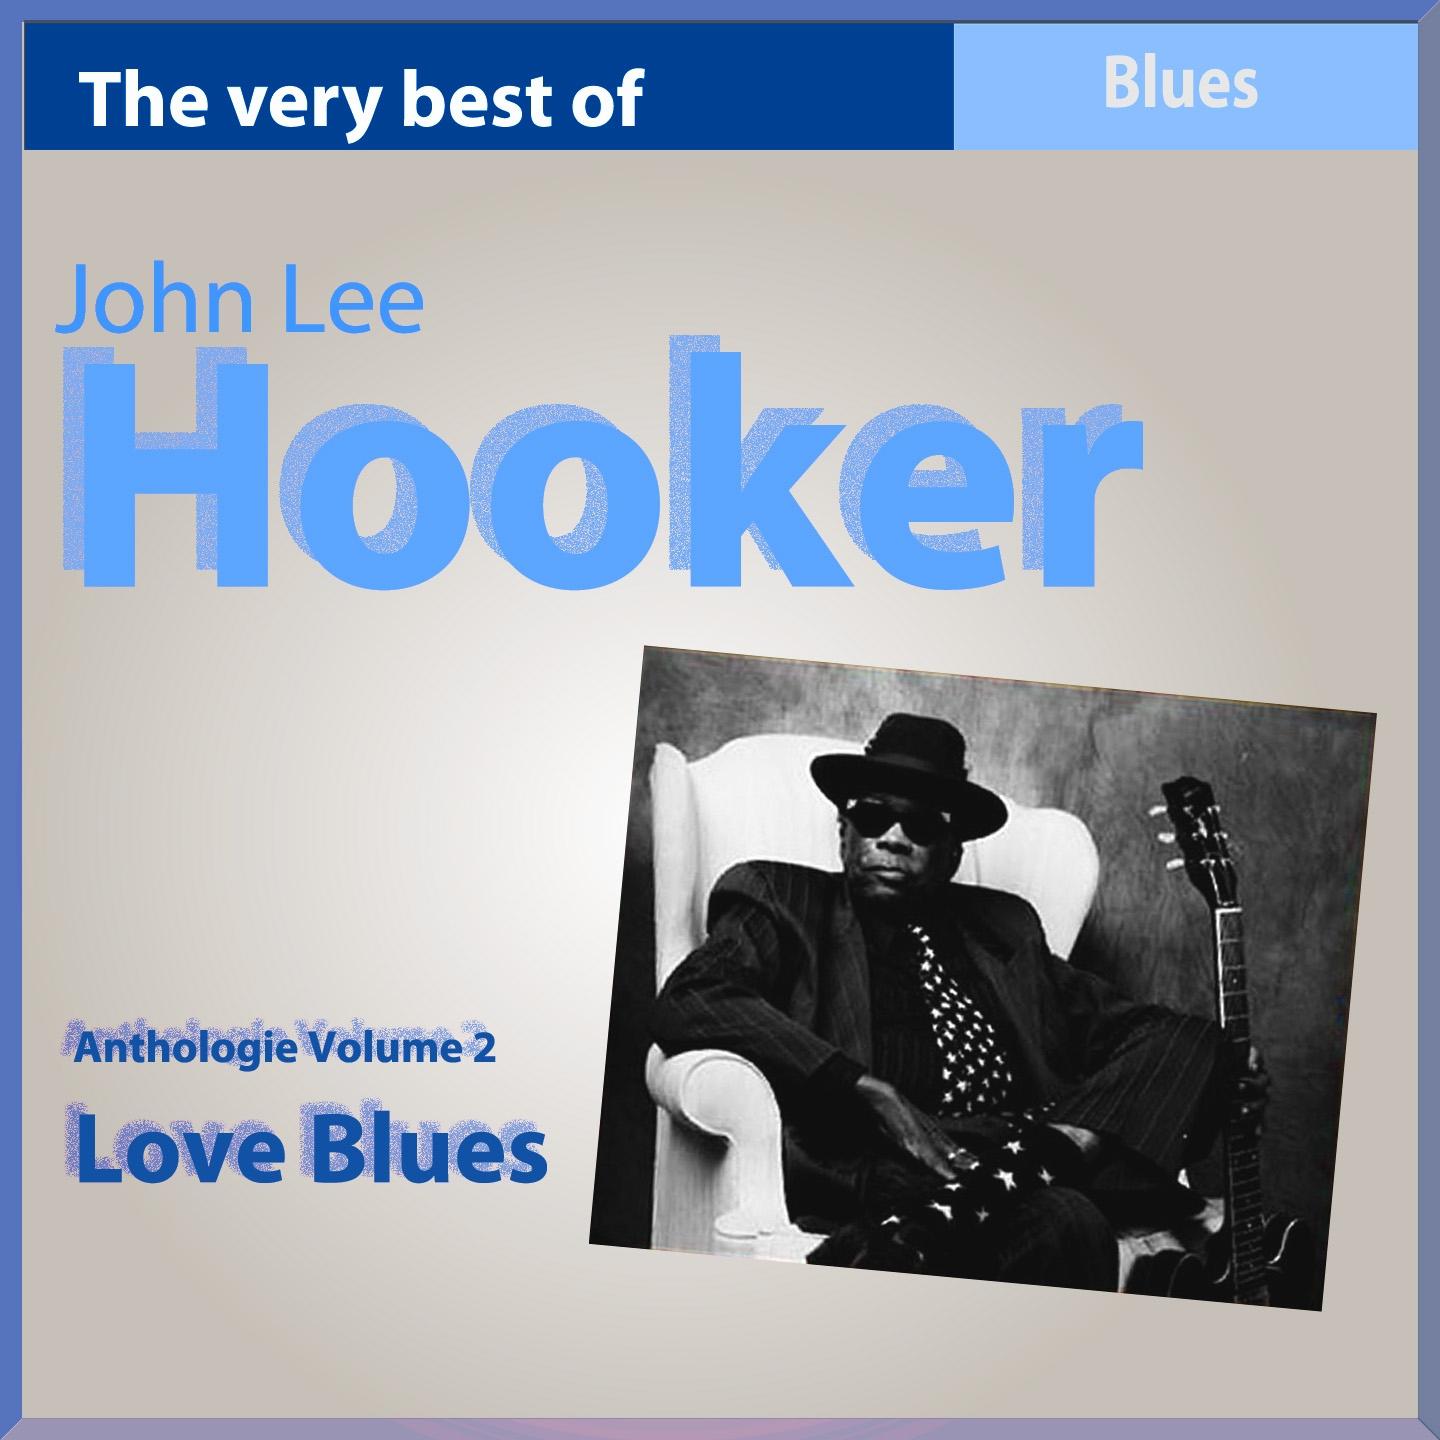 The Very Best of John Lee Hooker: Love Blues